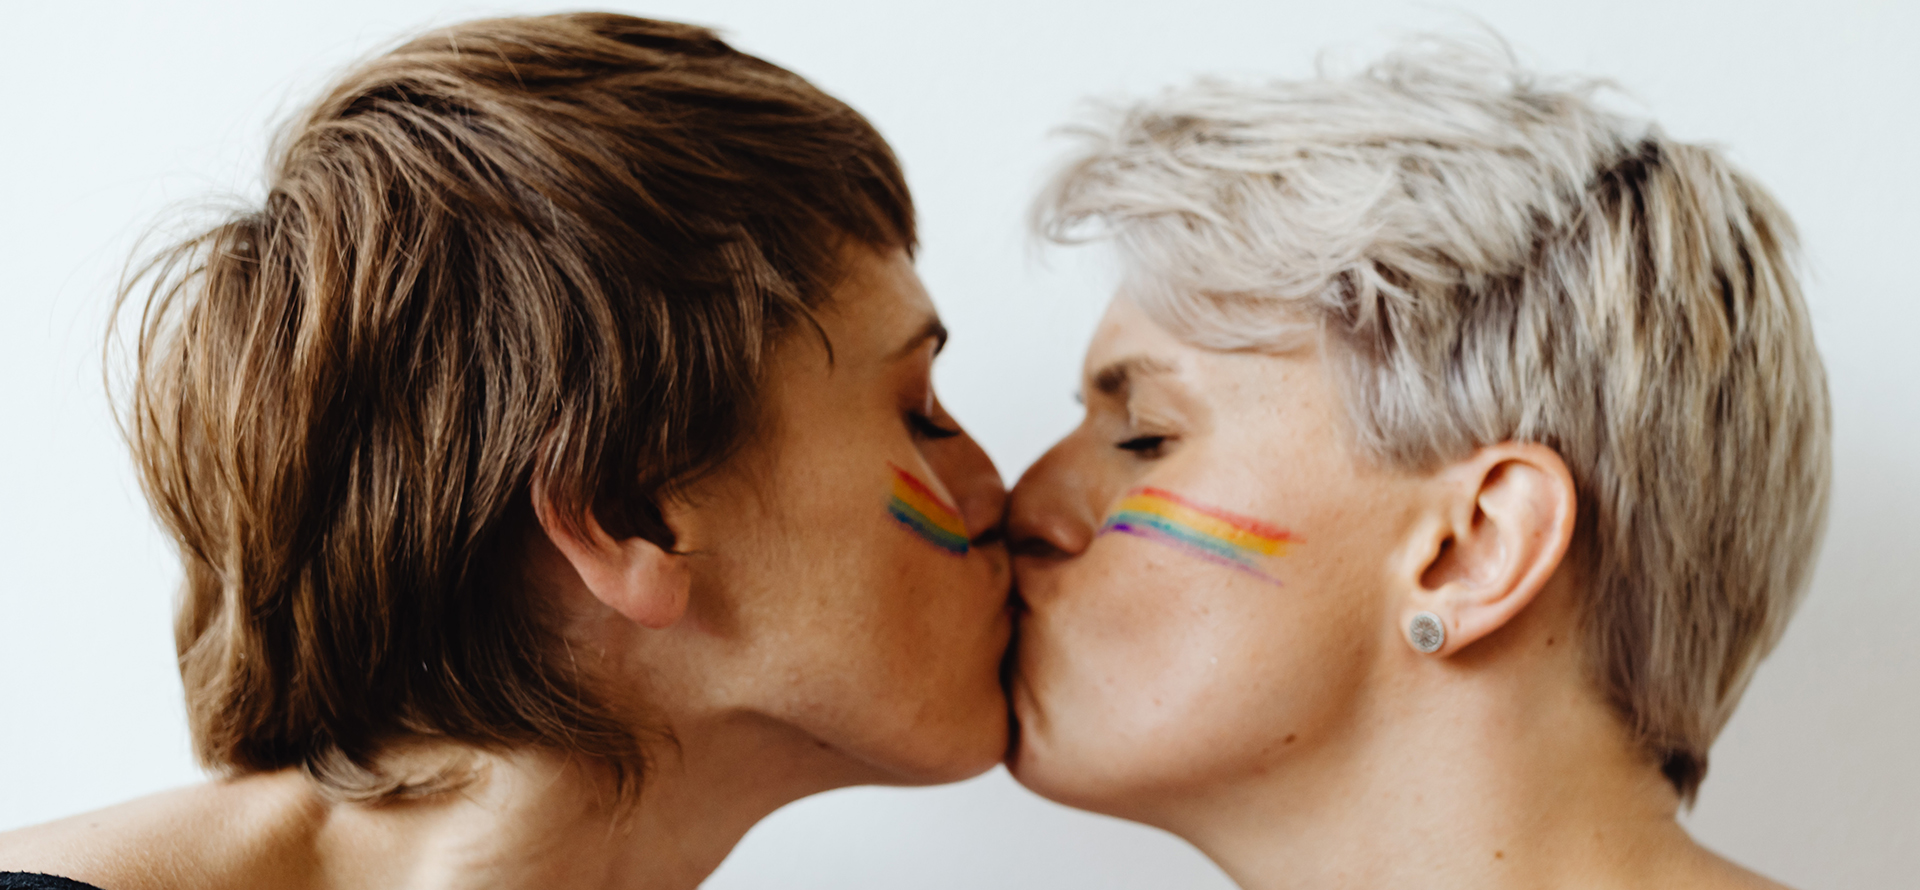 Una pareja de lesbianas besándose.